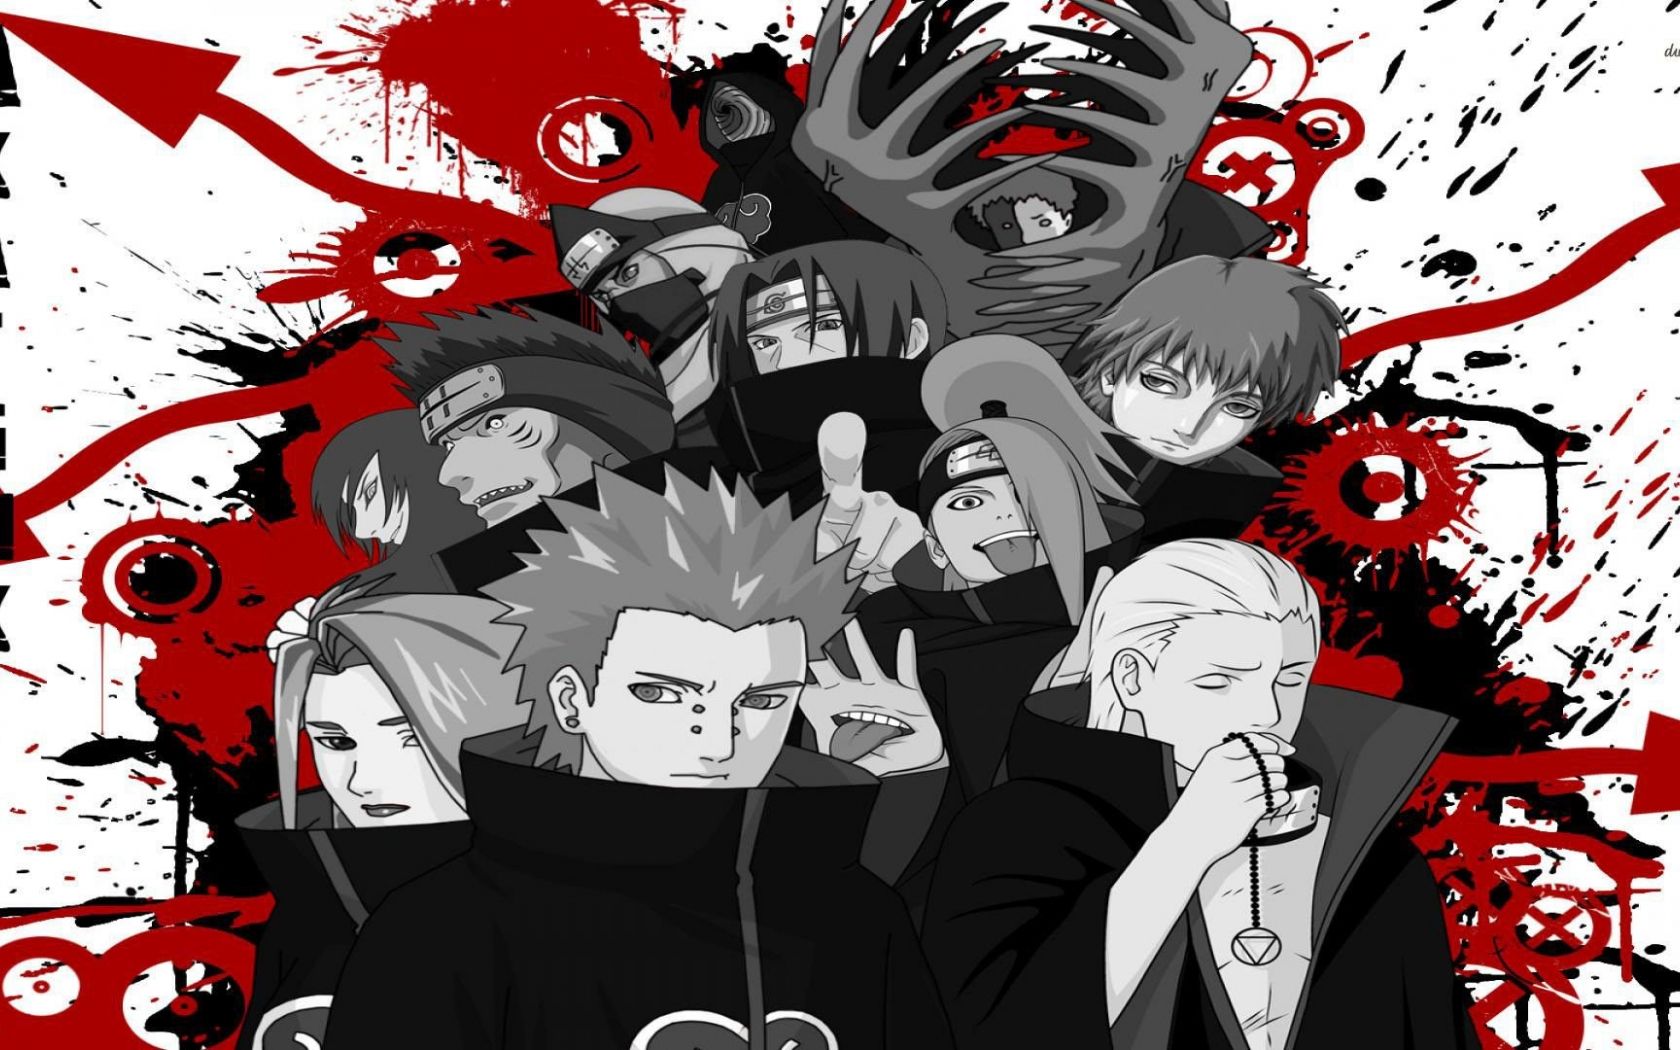 Free download Akatsuki Naruto Shippuden wallpaper Anime wallpaper